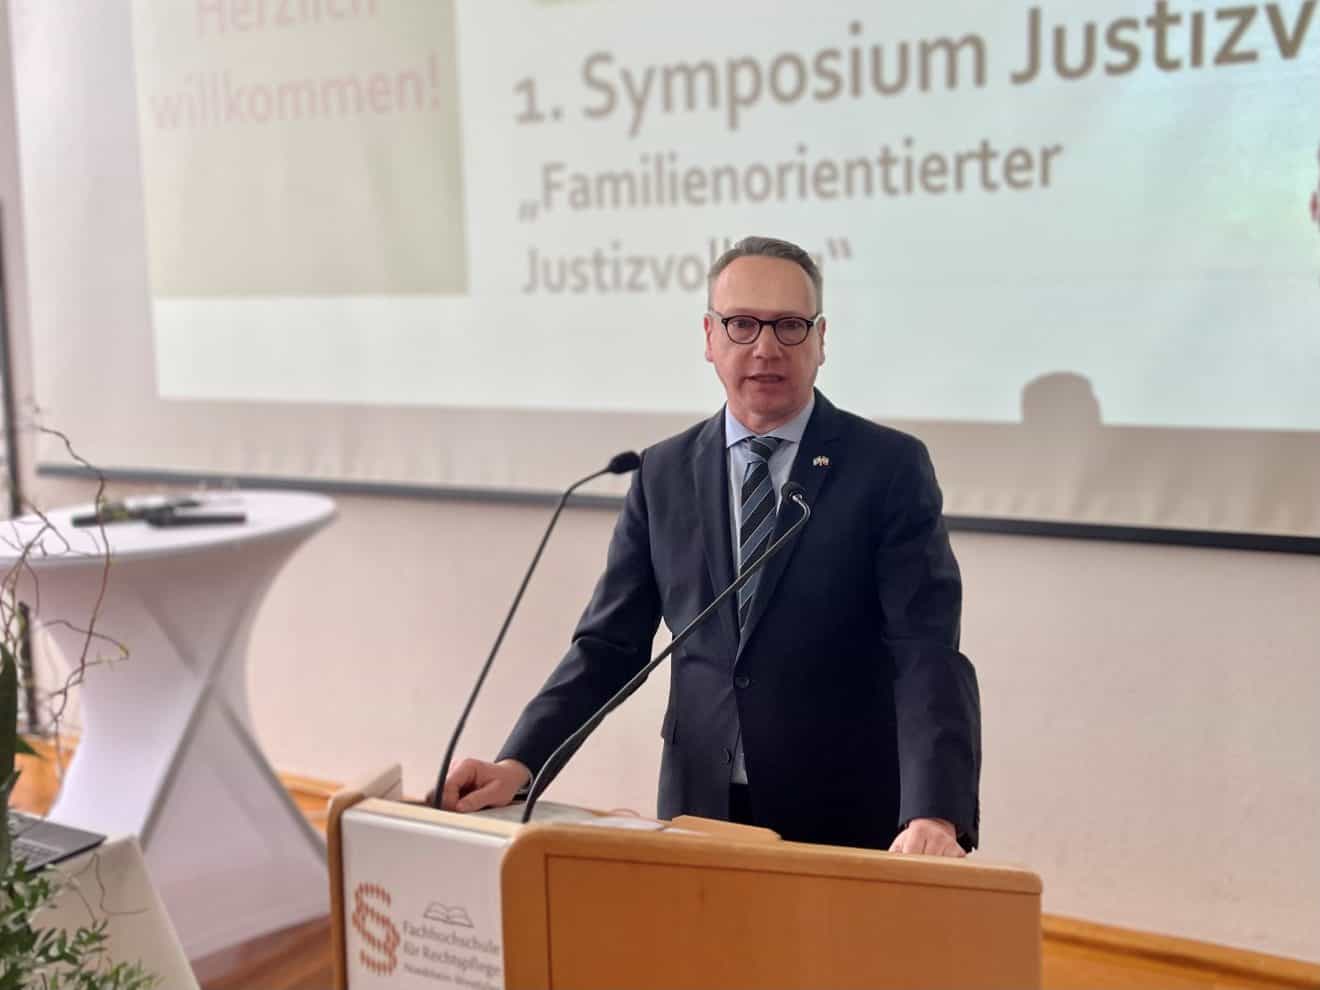 Symposium ＂Familienorientierung im Justizvollzug＂ in NRW